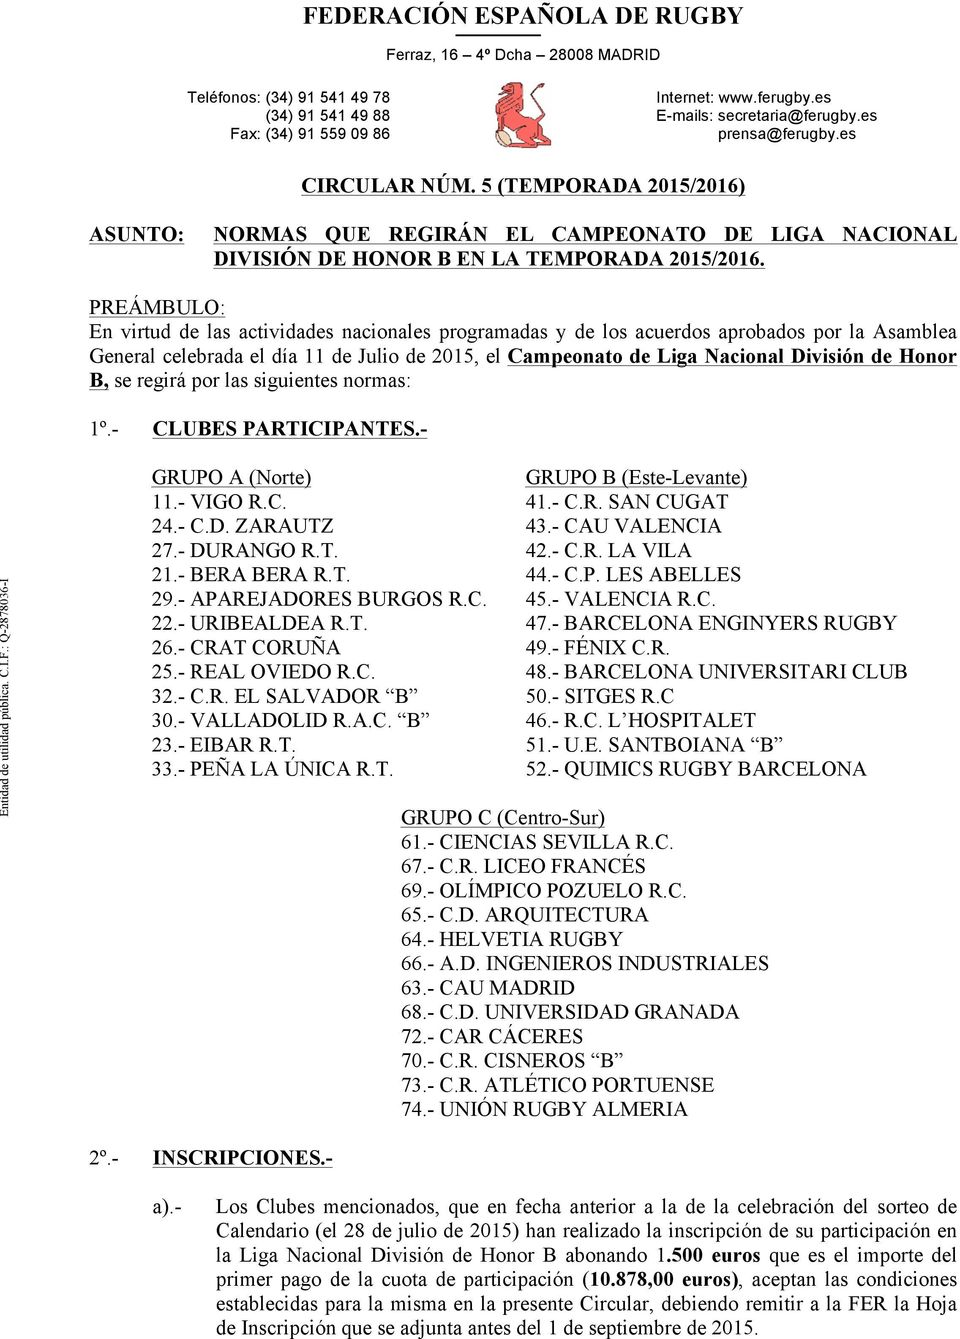 PREÁMBULO: En virtud de las actividades nacionales programadas y de los acuerdos aprobados por la Asamblea General celebrada el día 11 de Julio de 2015, el Campeonato de Liga Nacional División de